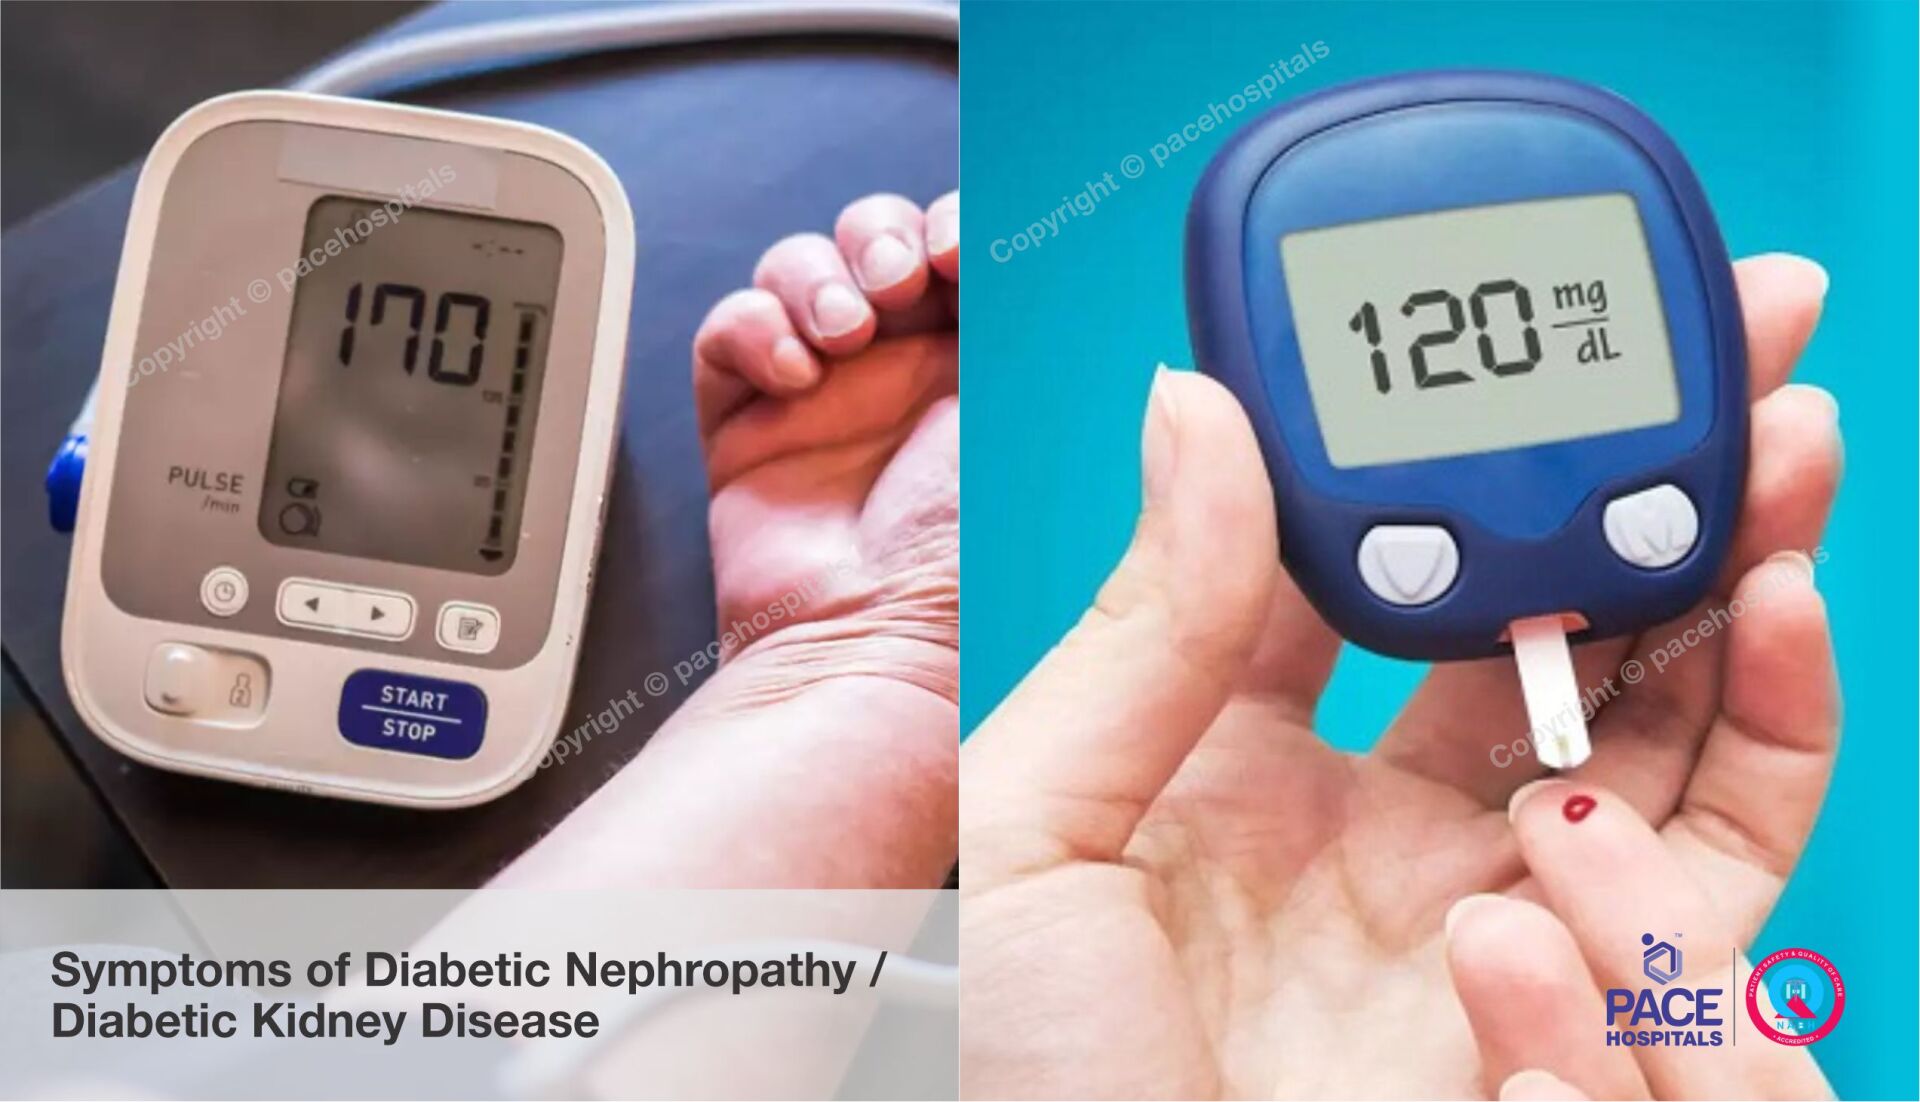 signs and symptoms of Diabetic Nephropathy, Diabetic Kidney Disease